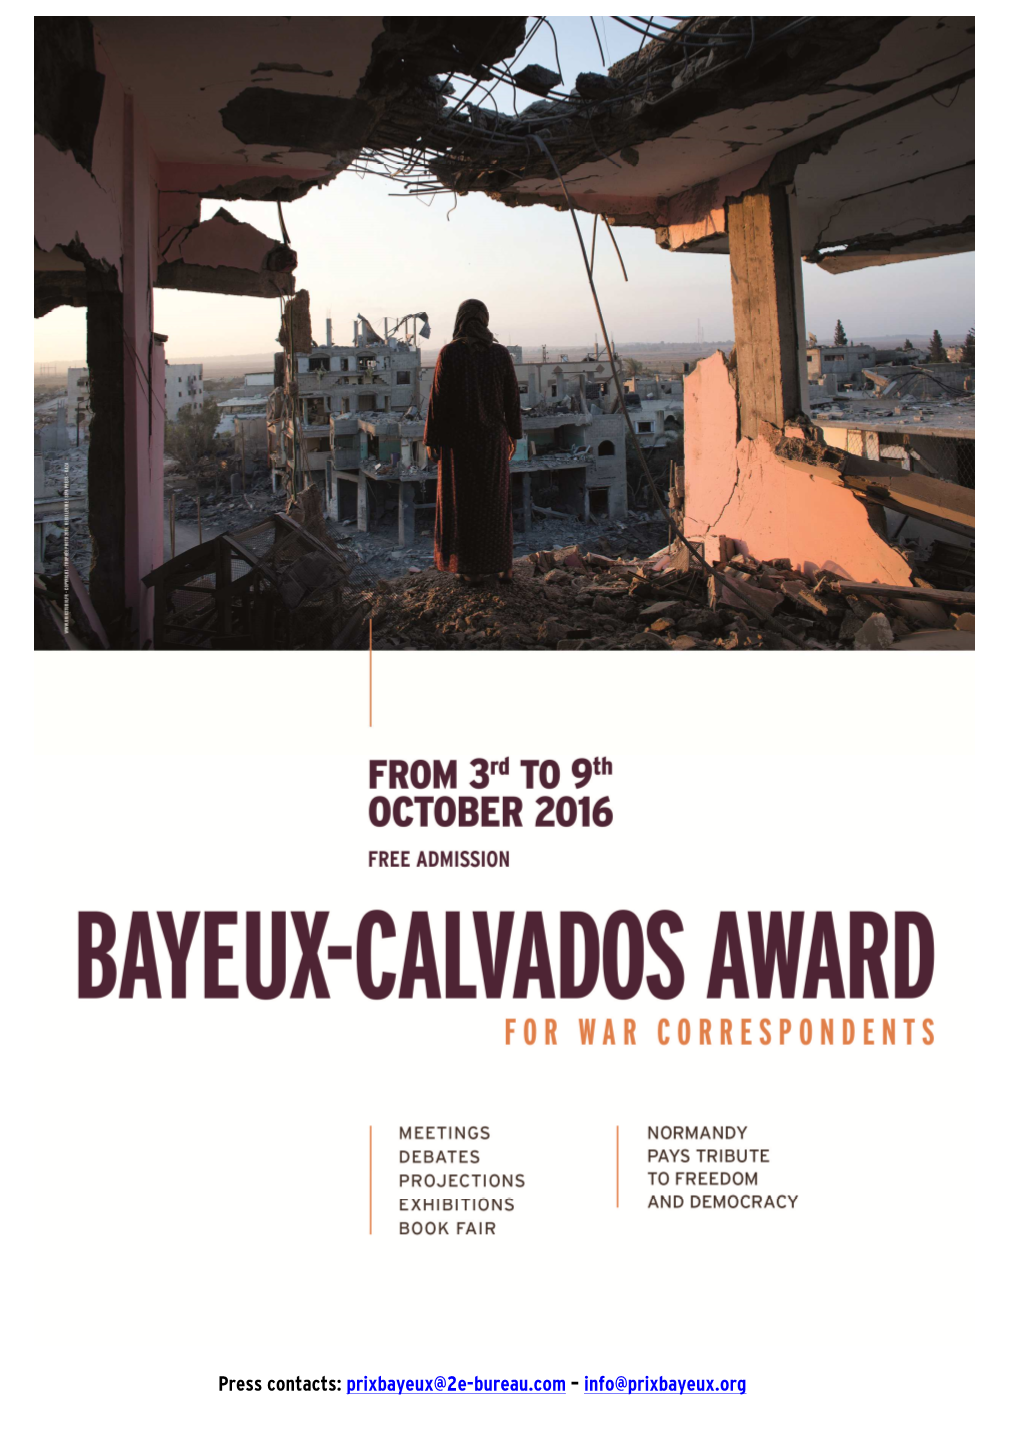 Bayeux-Calvados Award 2016